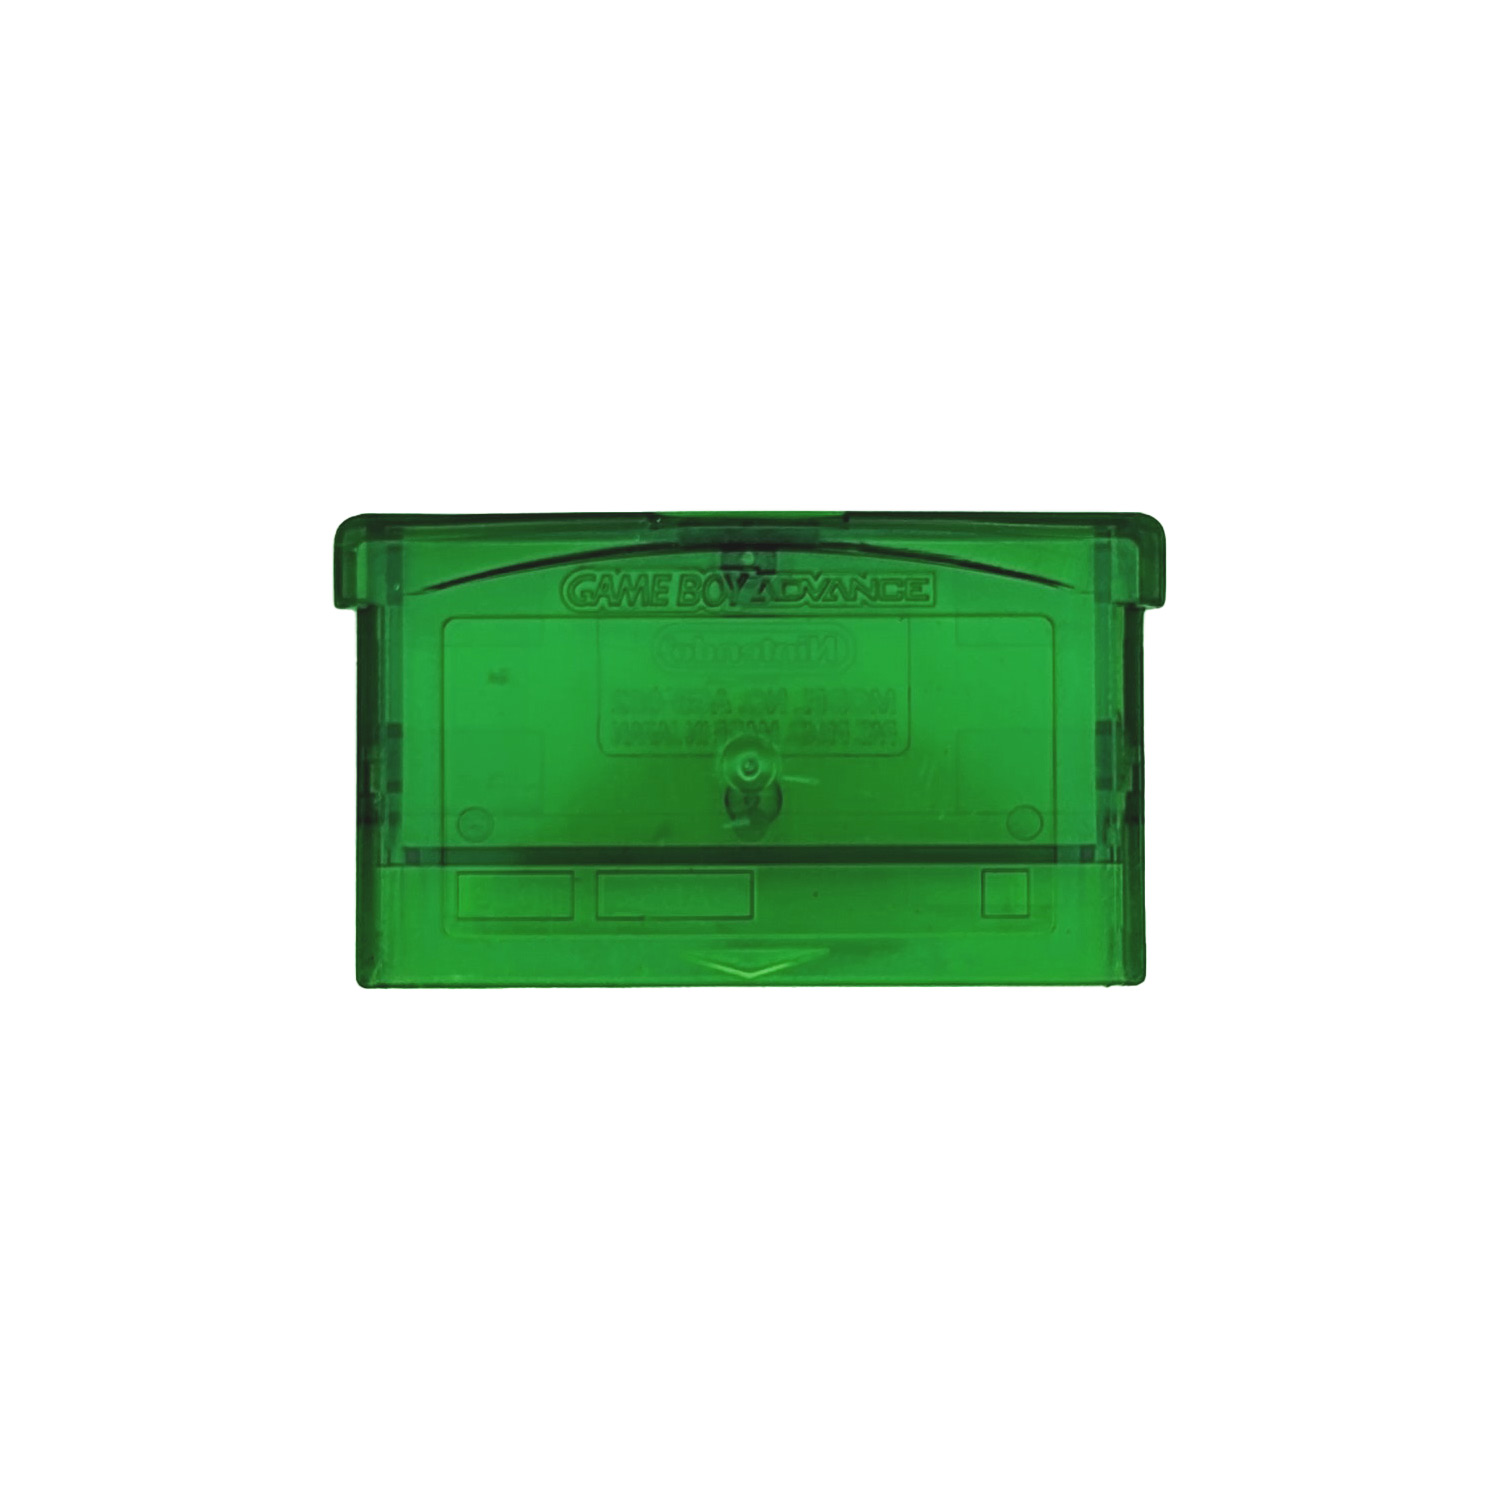 Alloggiamento modulo Game Boy Advance (verde trasparente)